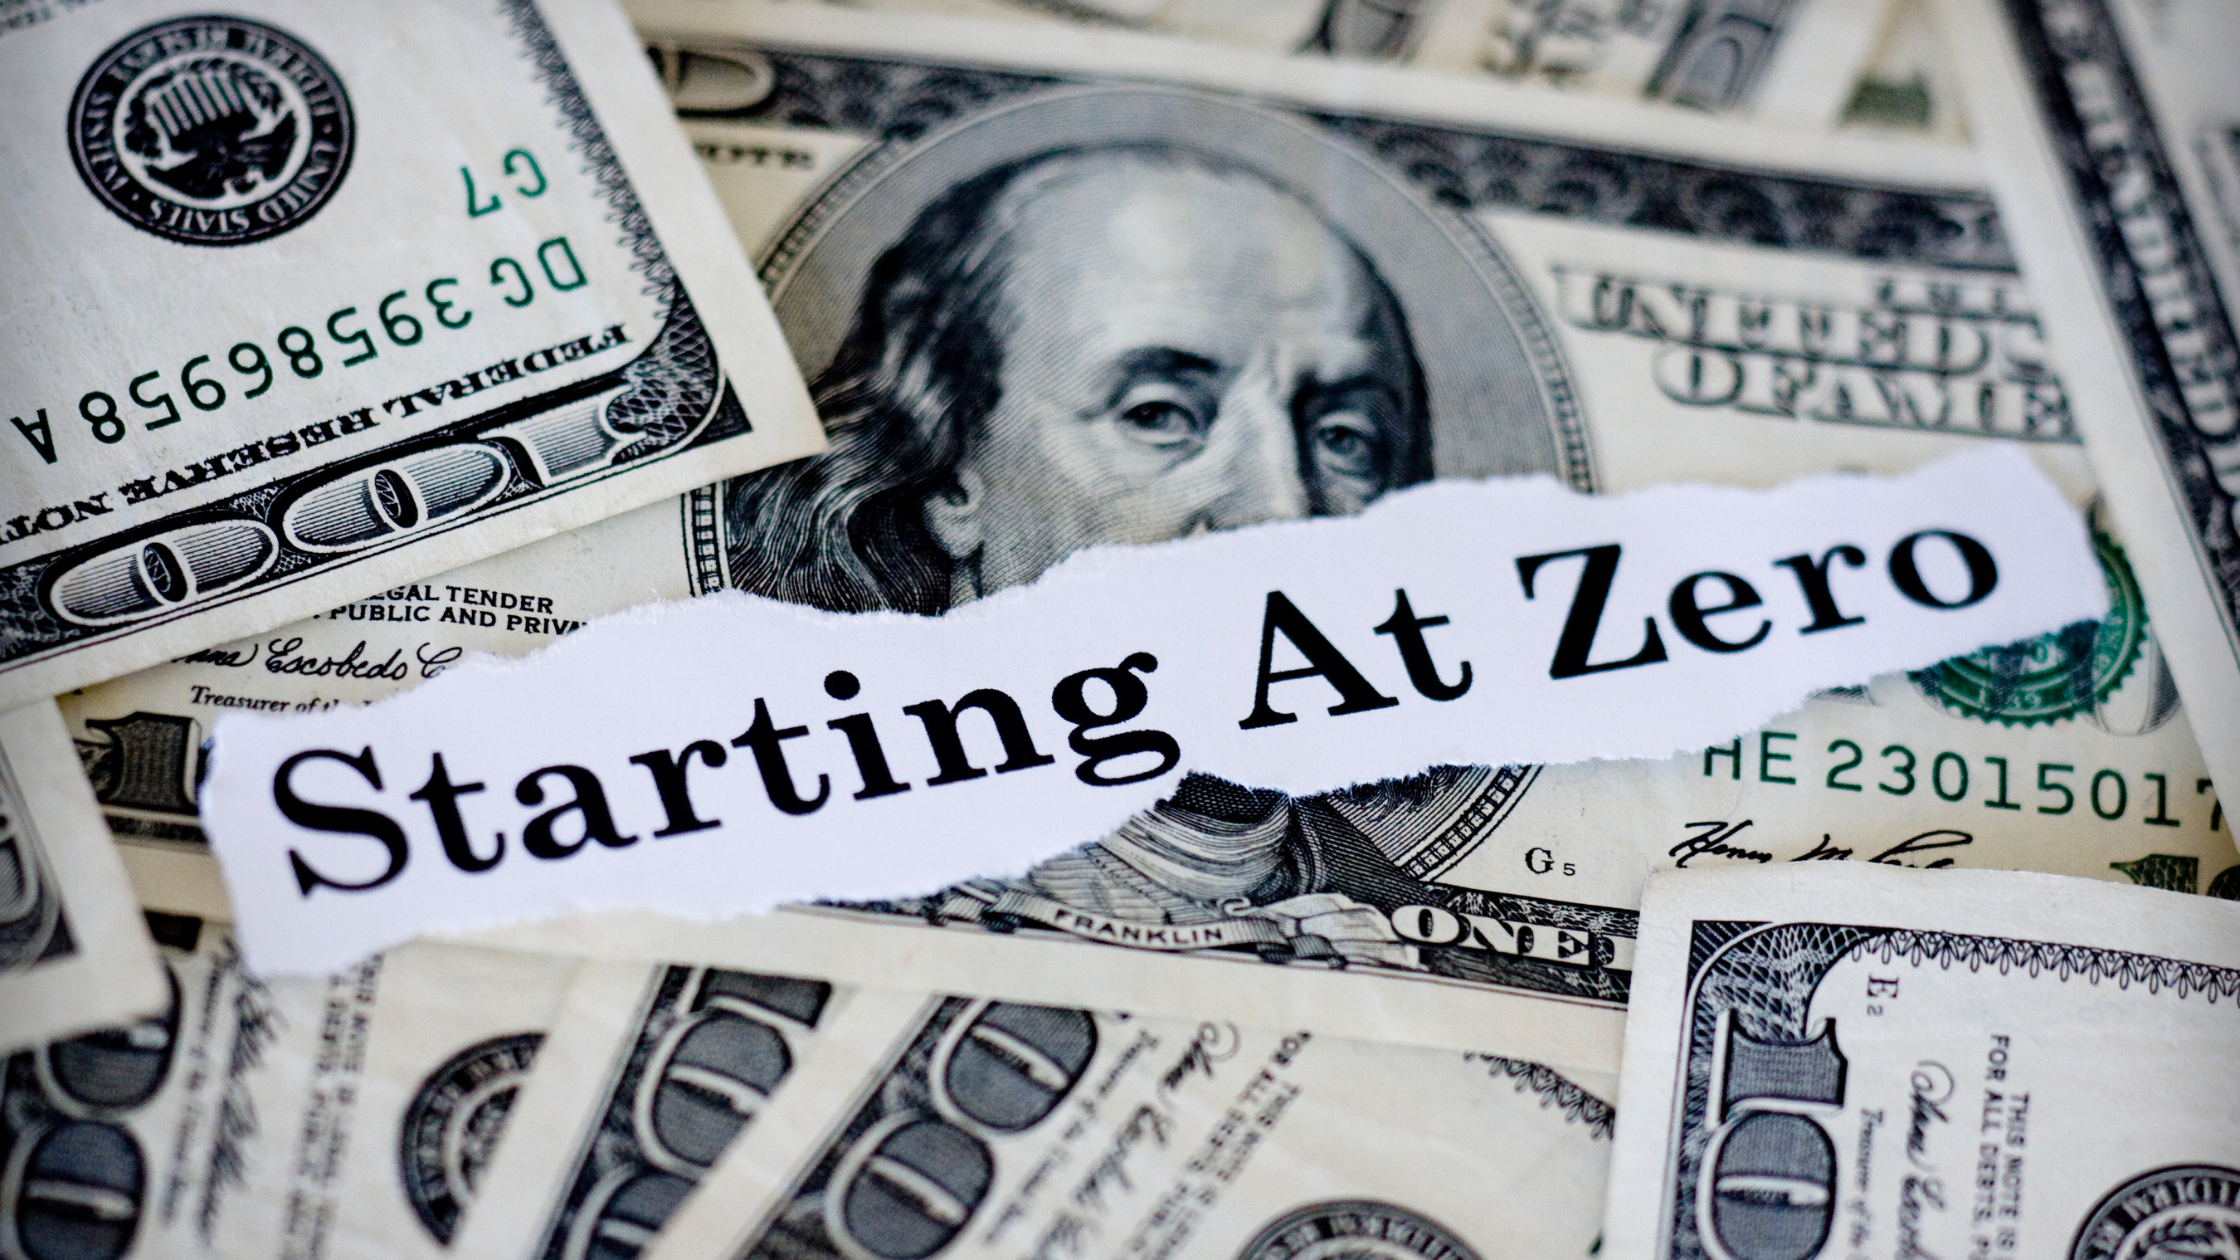 Starting with zero dollars